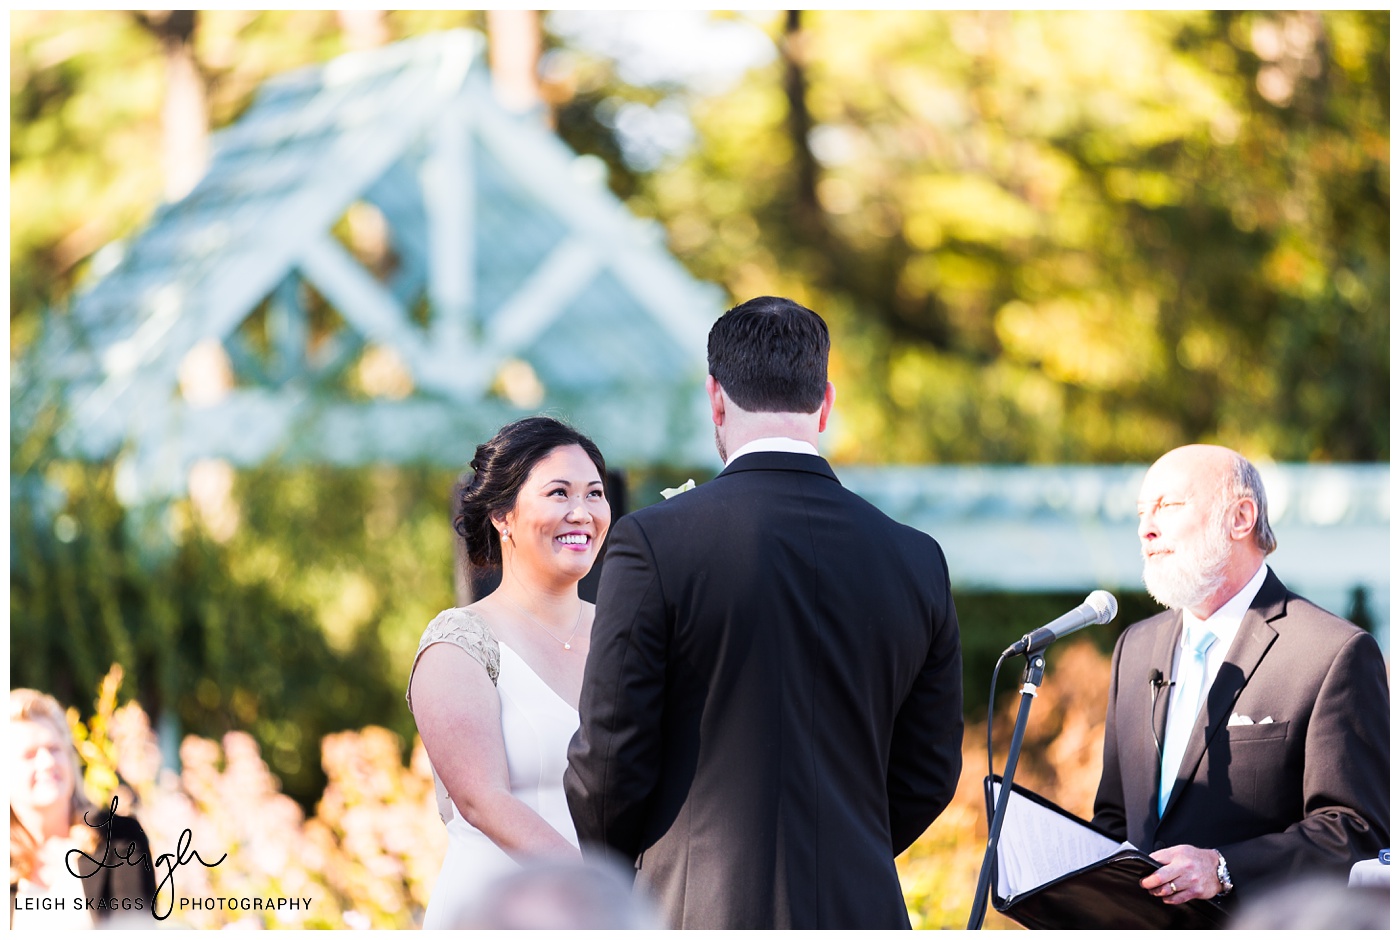 Alyson & Jared | Norfolk Botanical Garden Wedding